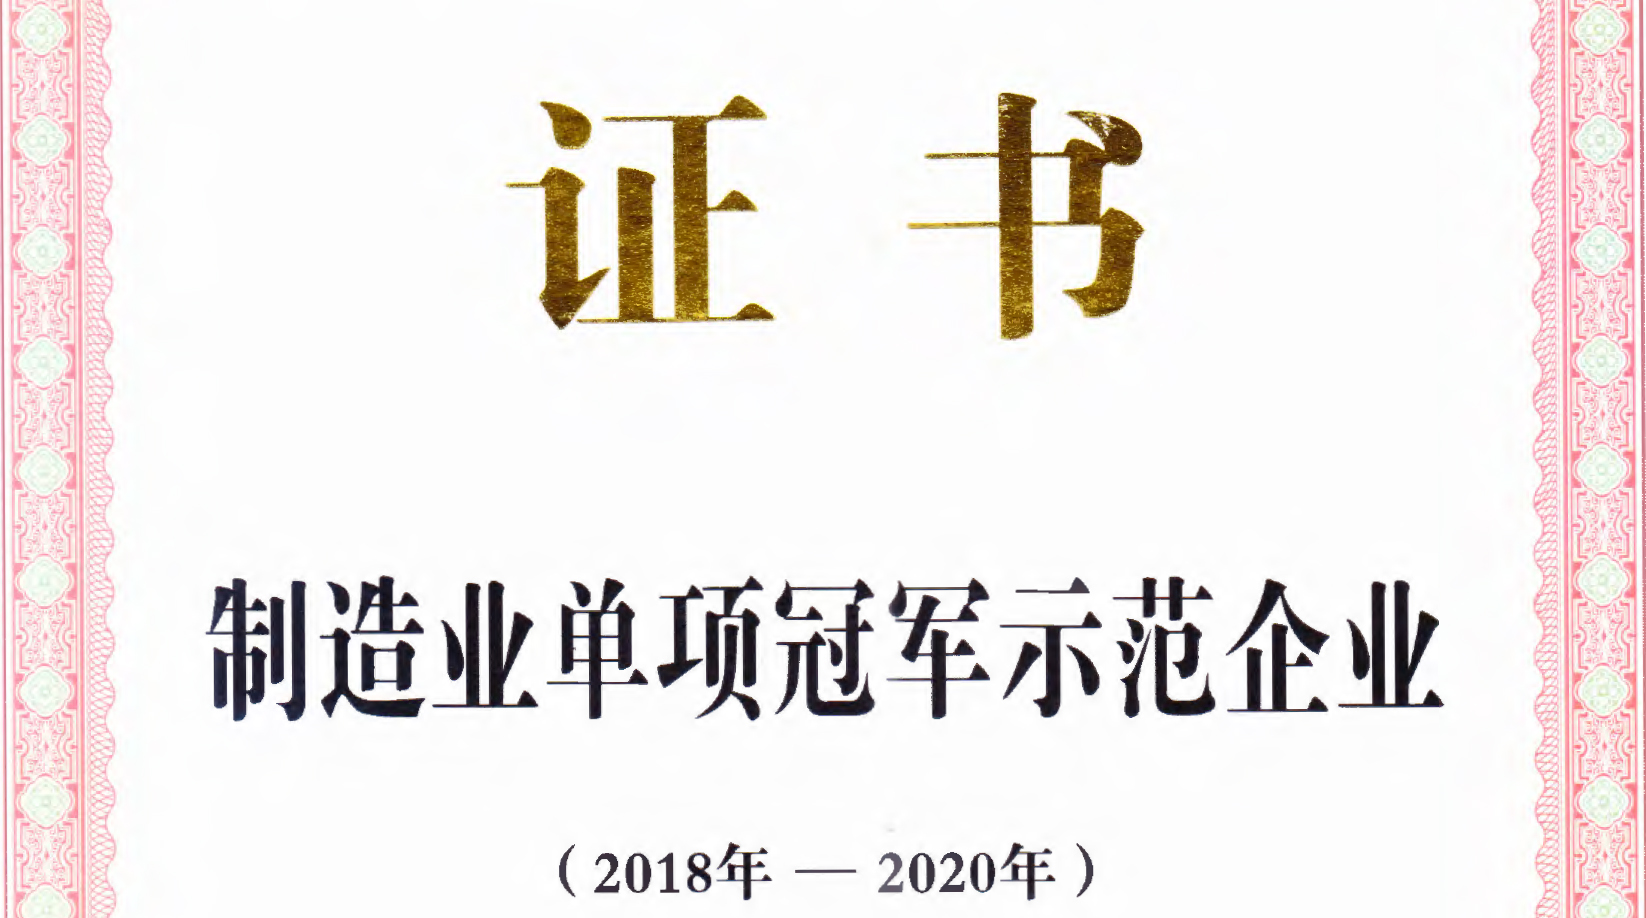 凤铝荣获中国“制造业单项冠军企业”称号